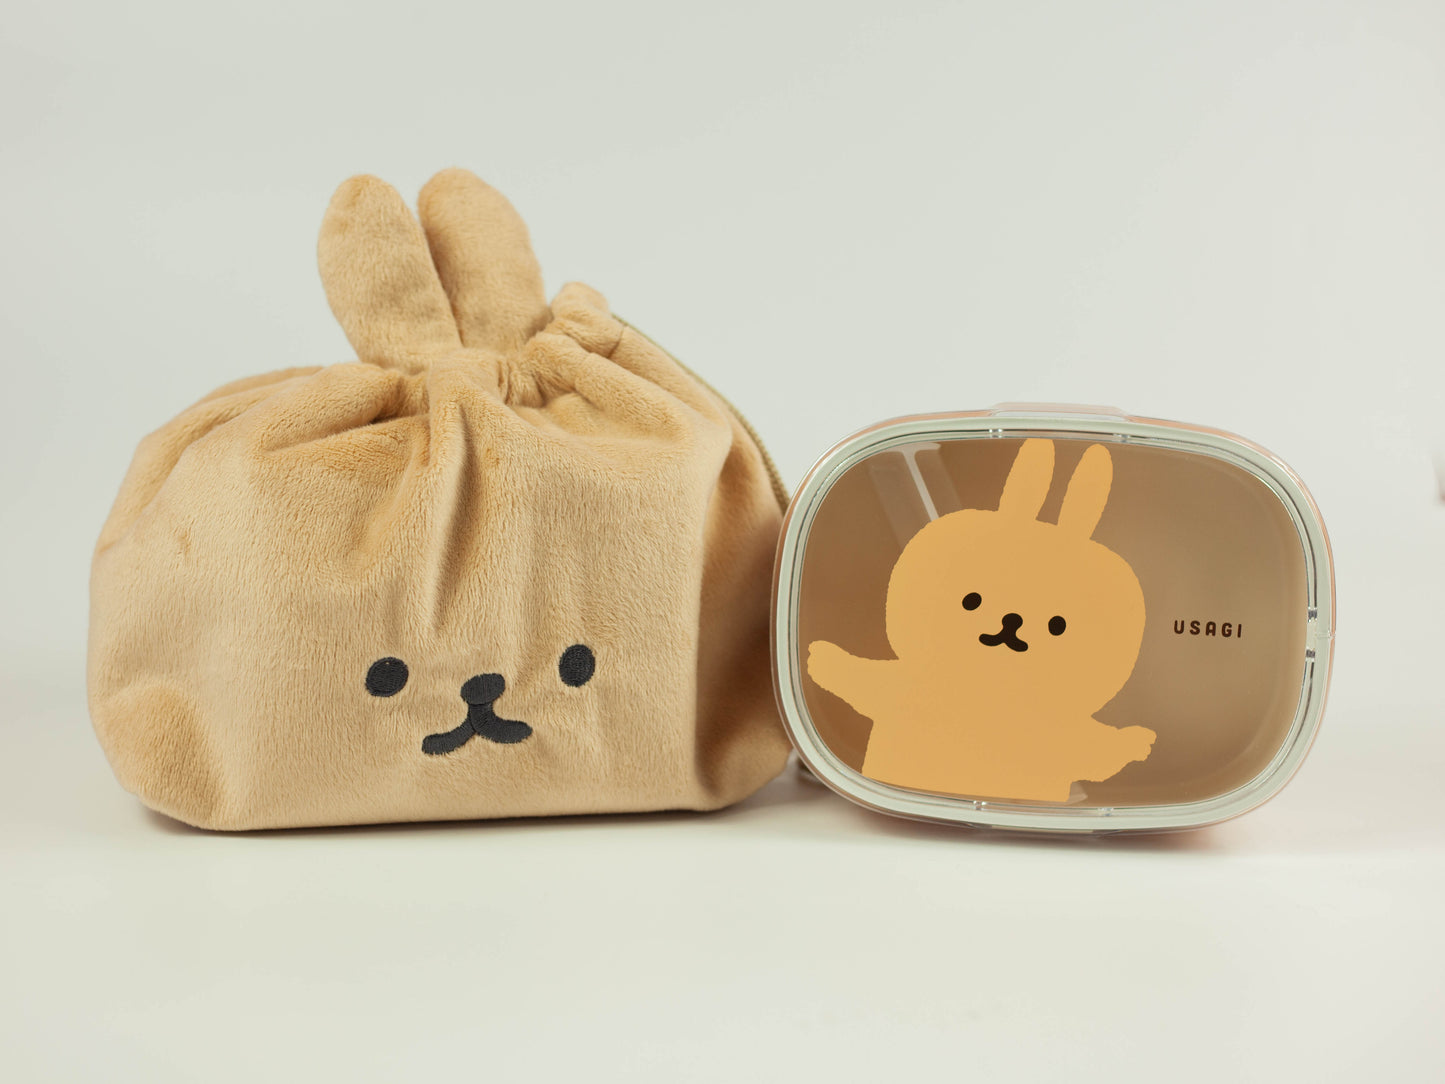 Animal Friends Bento Box 600mL | Usagi (Rabbit)